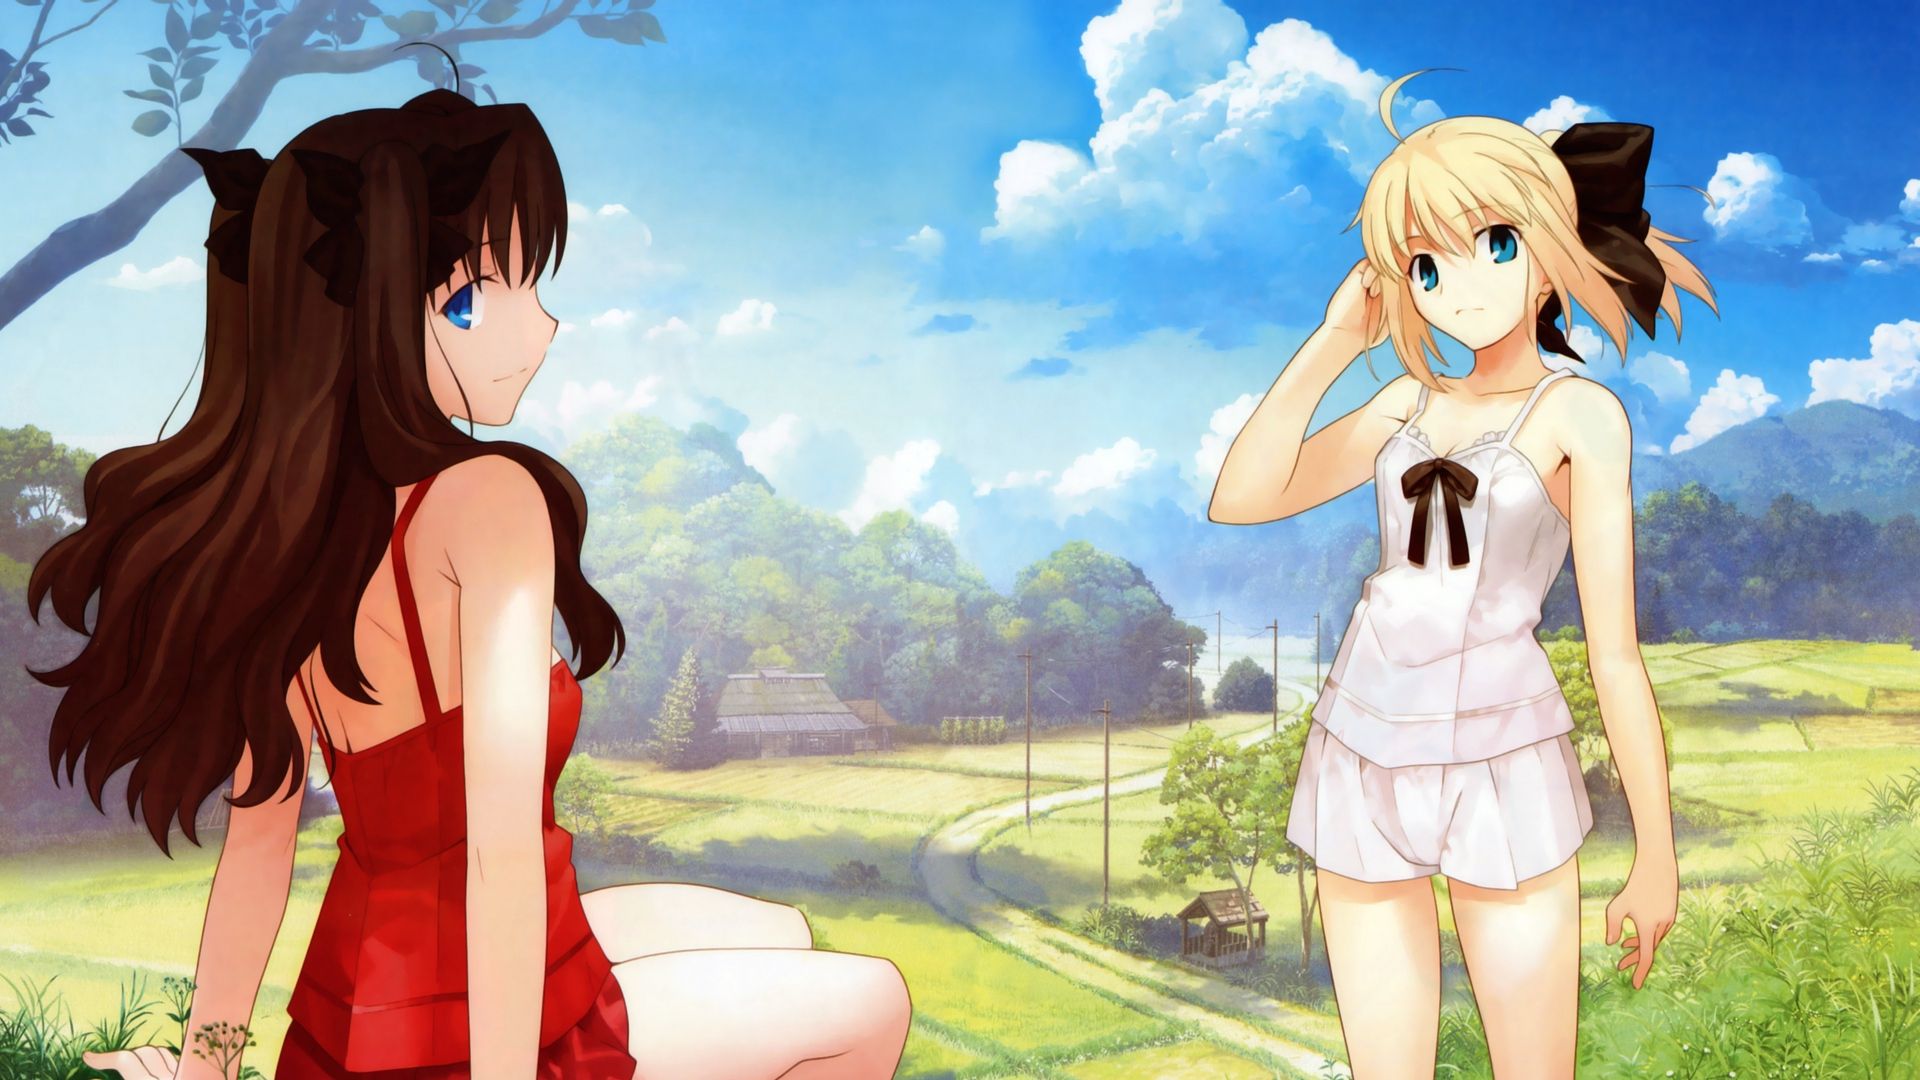 Summer Anime Wallpaper